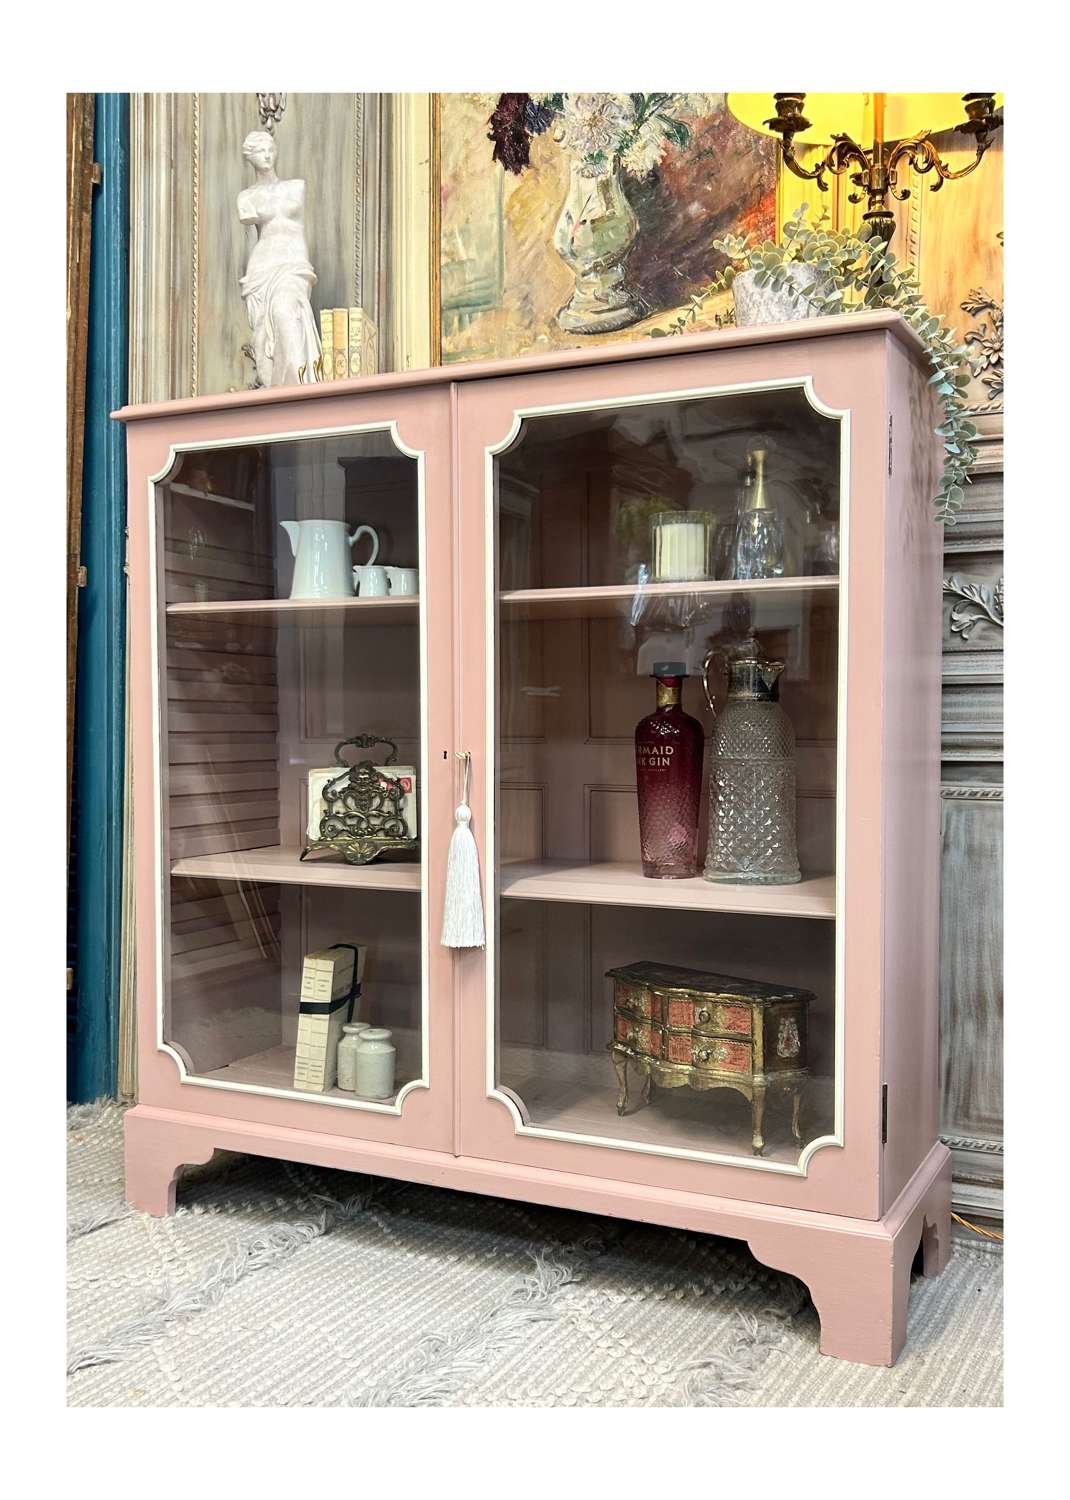 Old Rose Vintage Glazed Pink Cabinet with Key